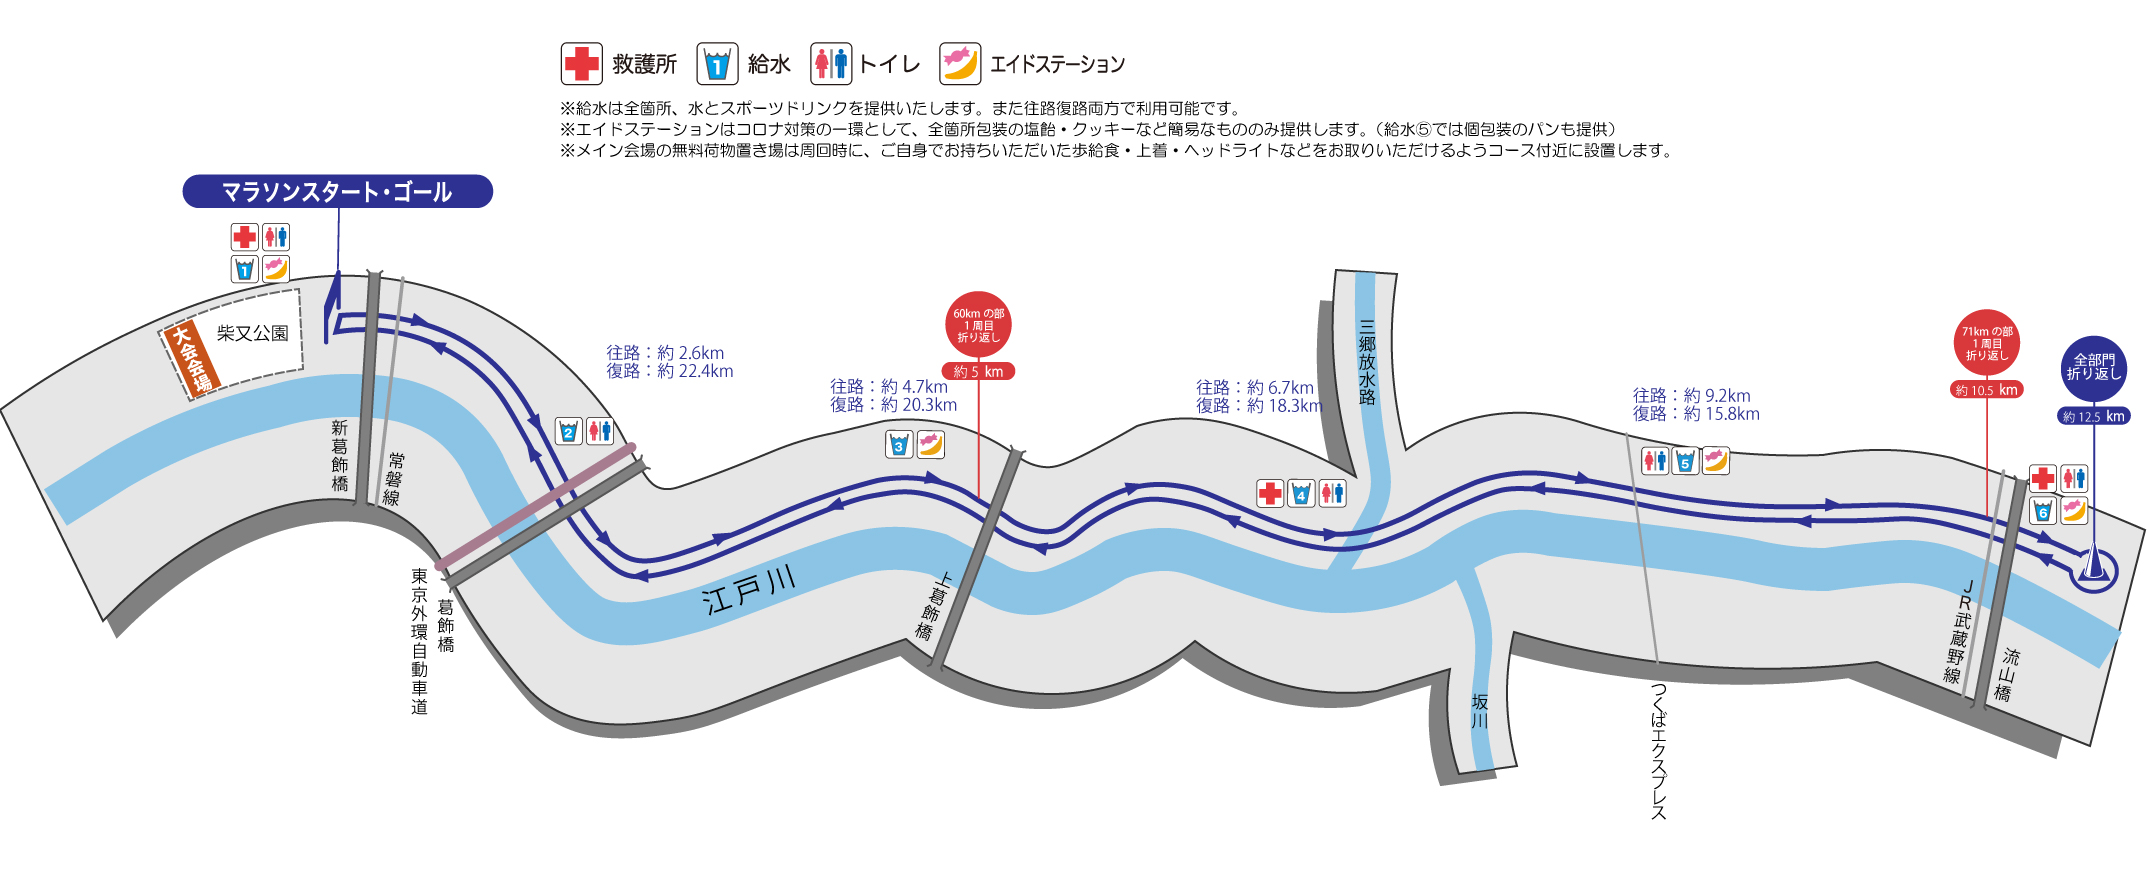 東京大会 コースマップ